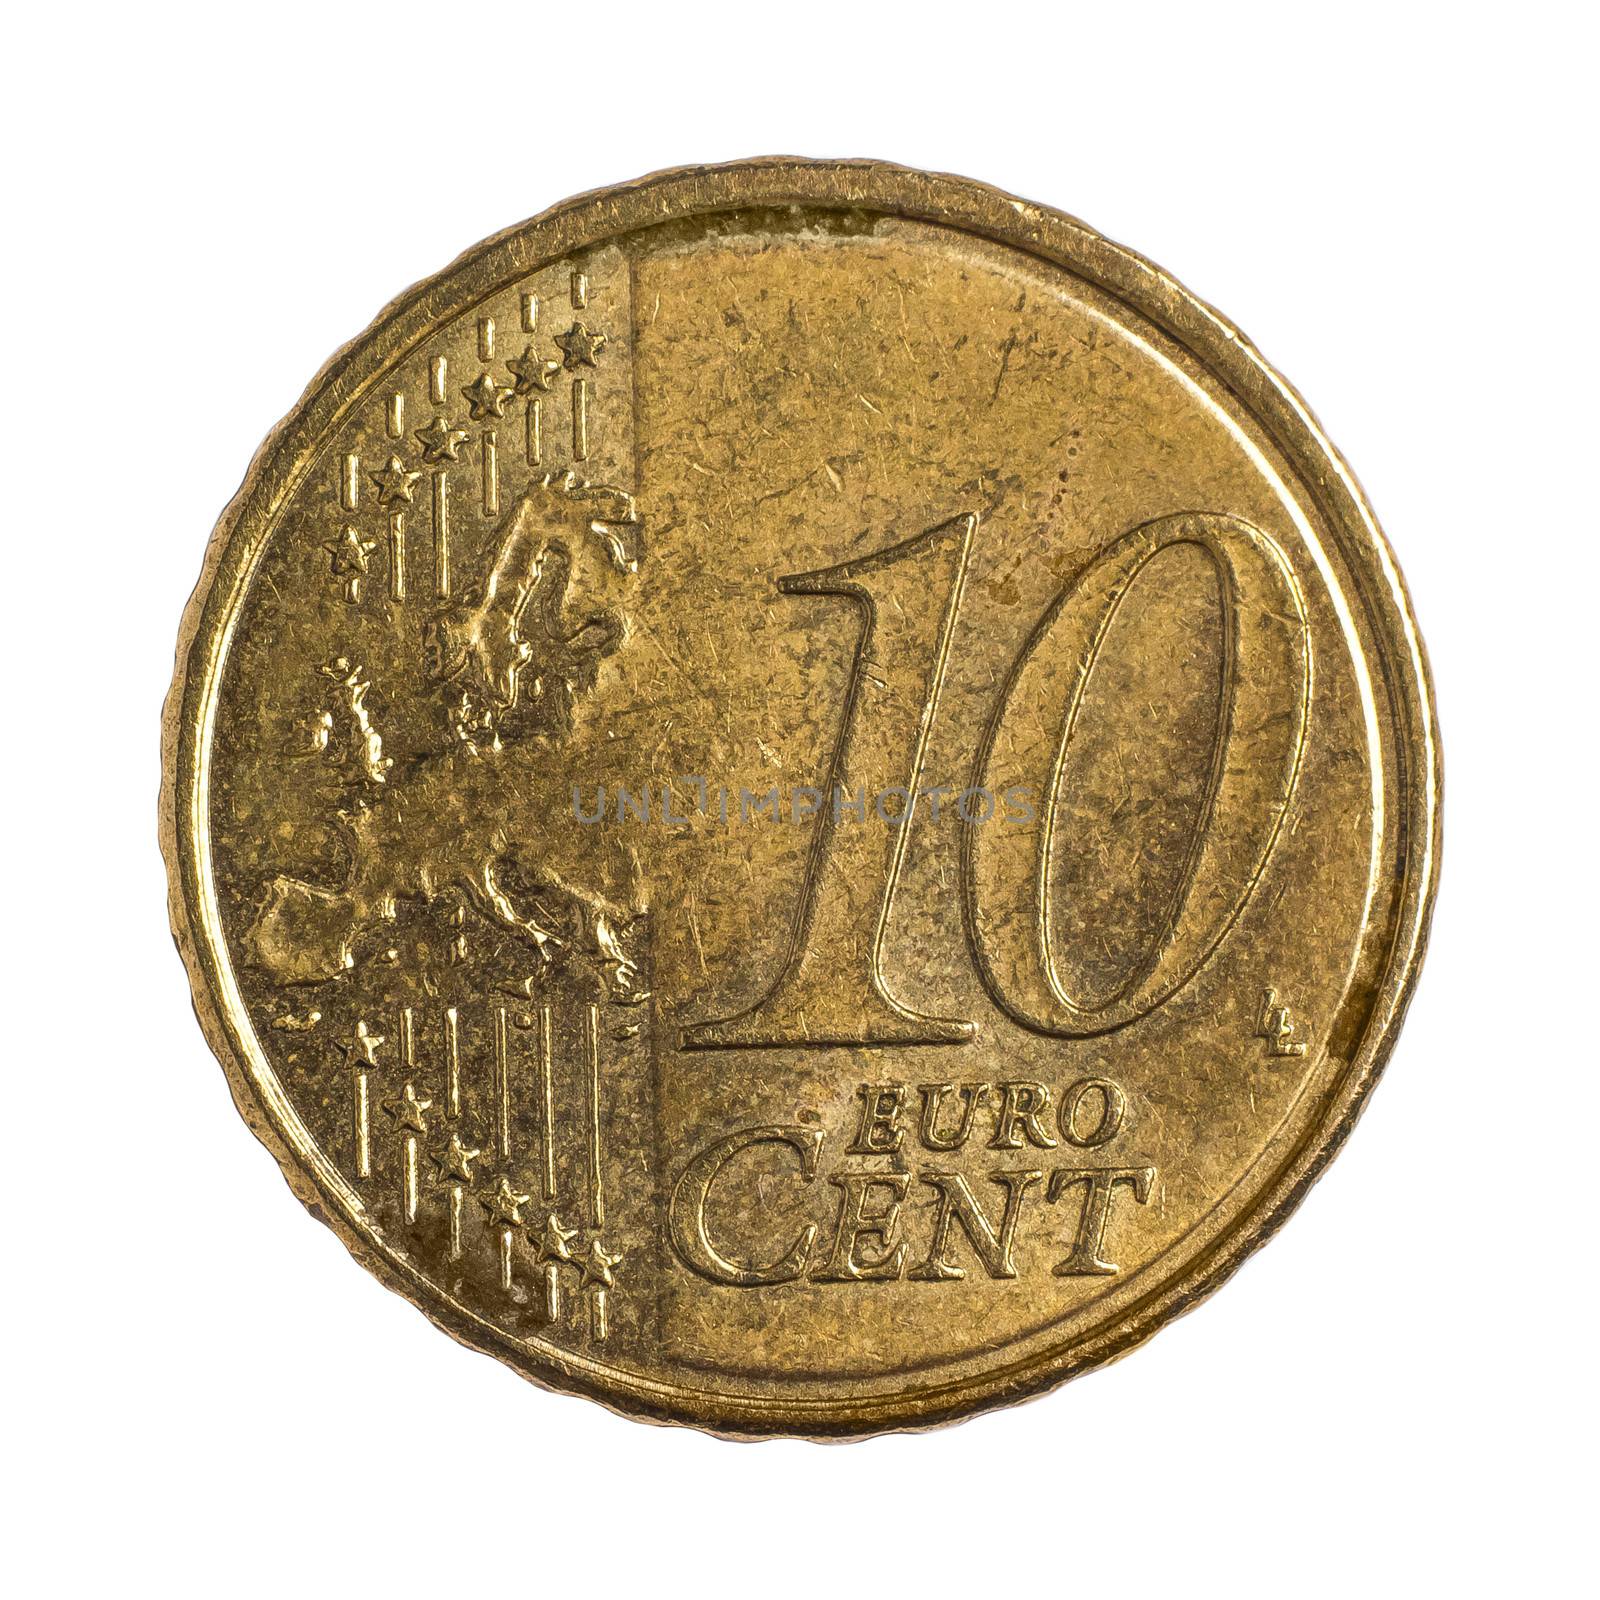 Ten euro cents by dynamicfoto